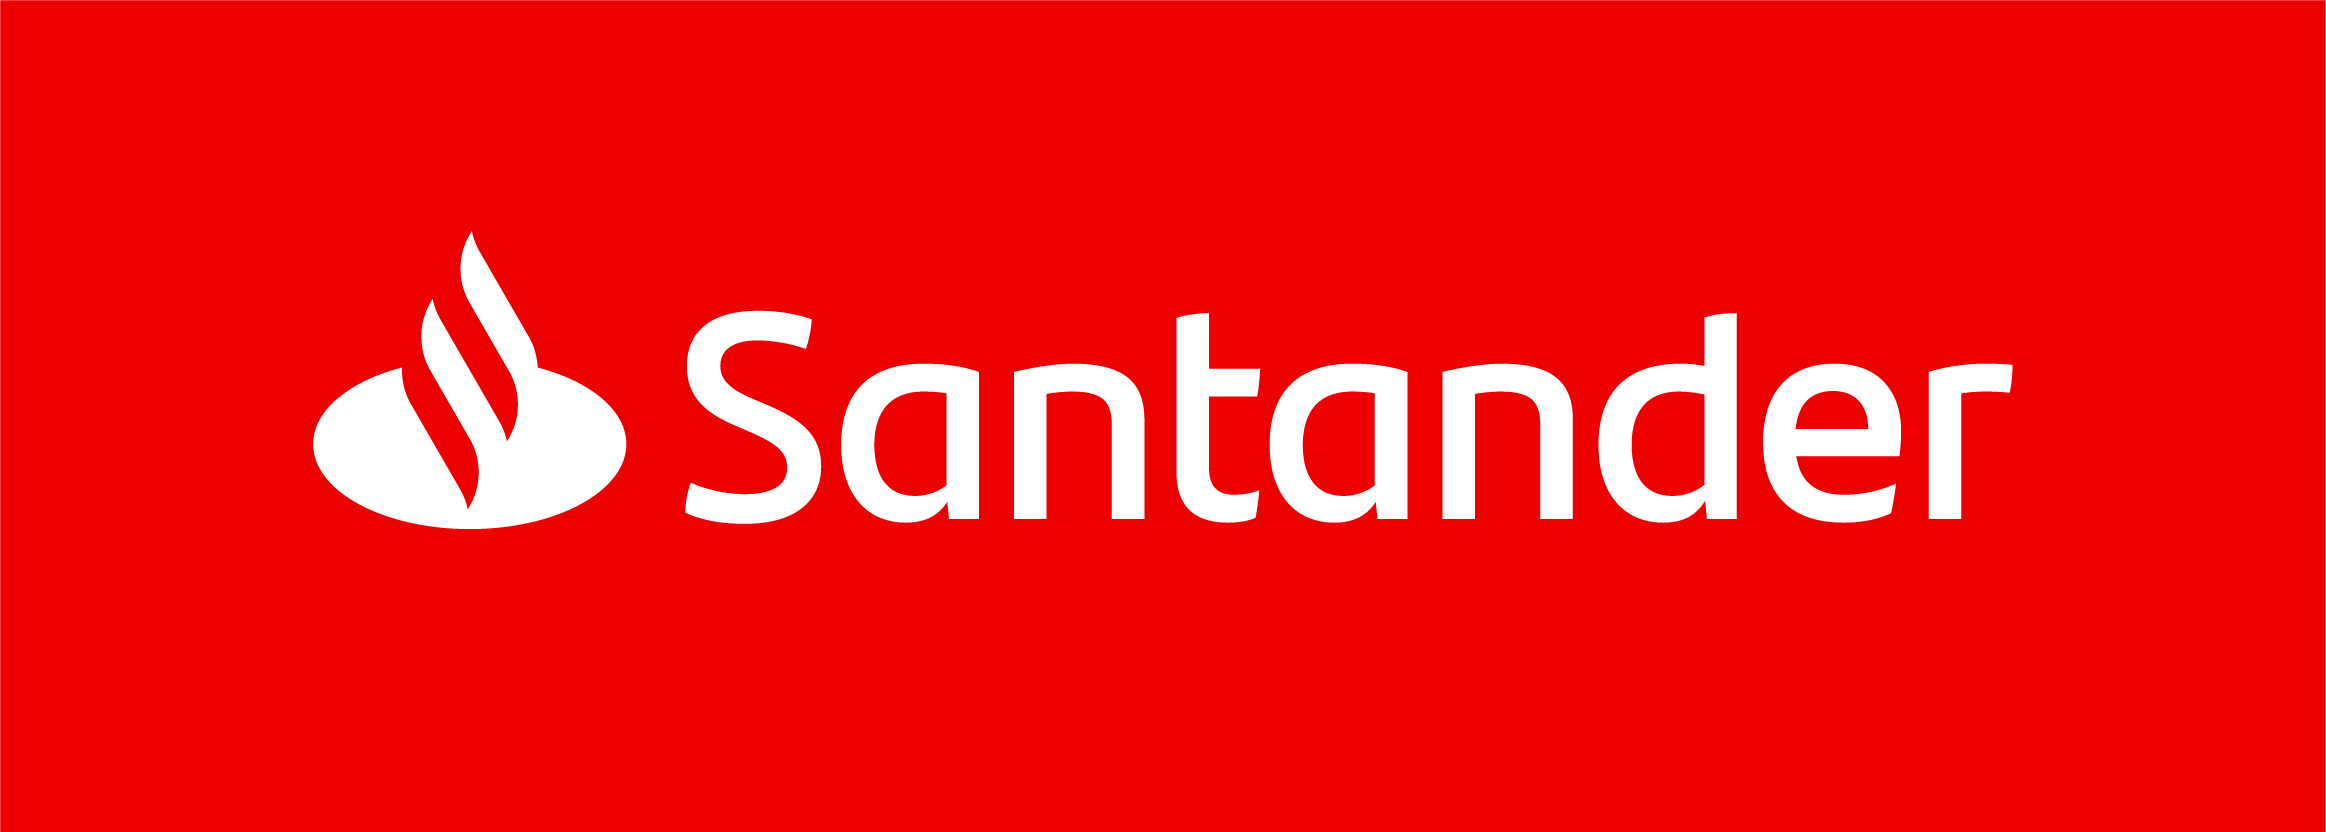 Santander Bank - Norway - Loan - Consumer Credit - Refinance | localmarket.no